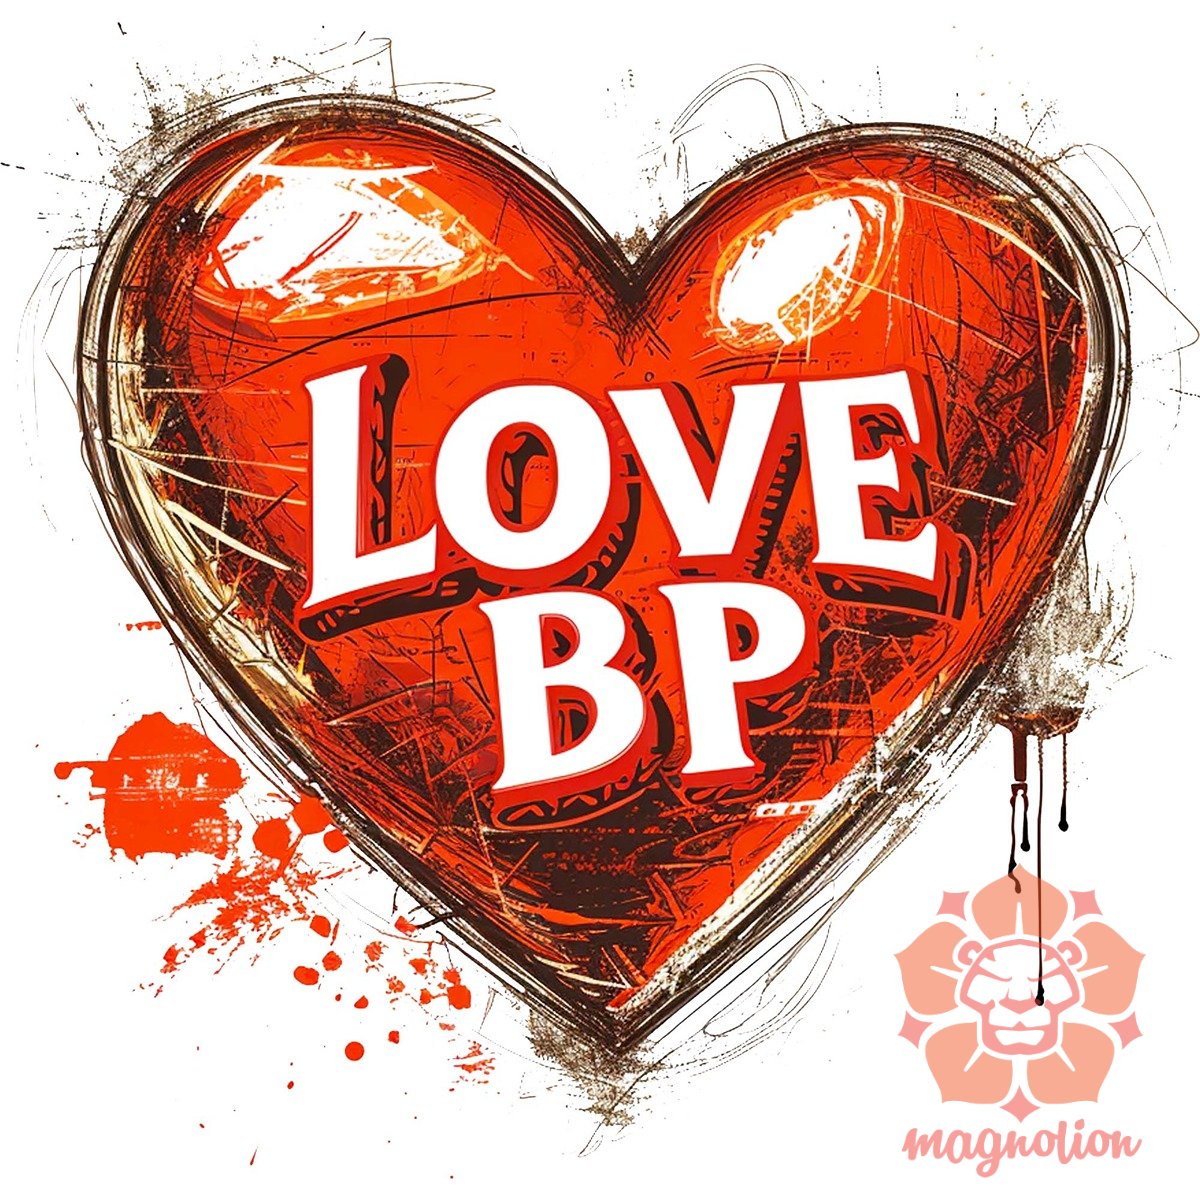 Love BP v23